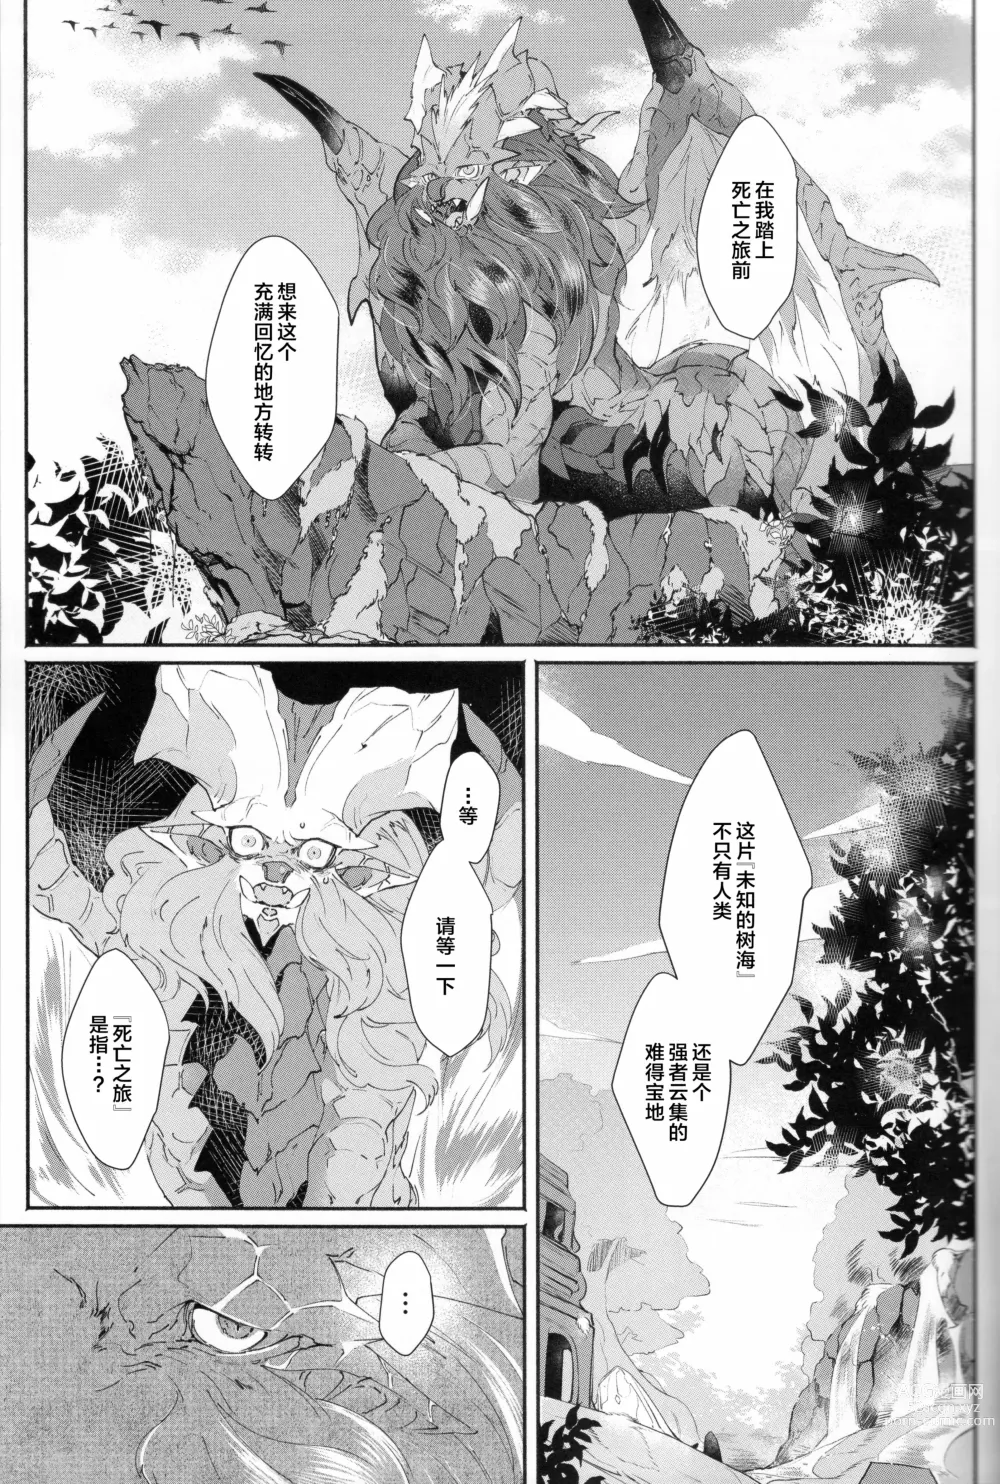 Page 7 of doujinshi VALSE